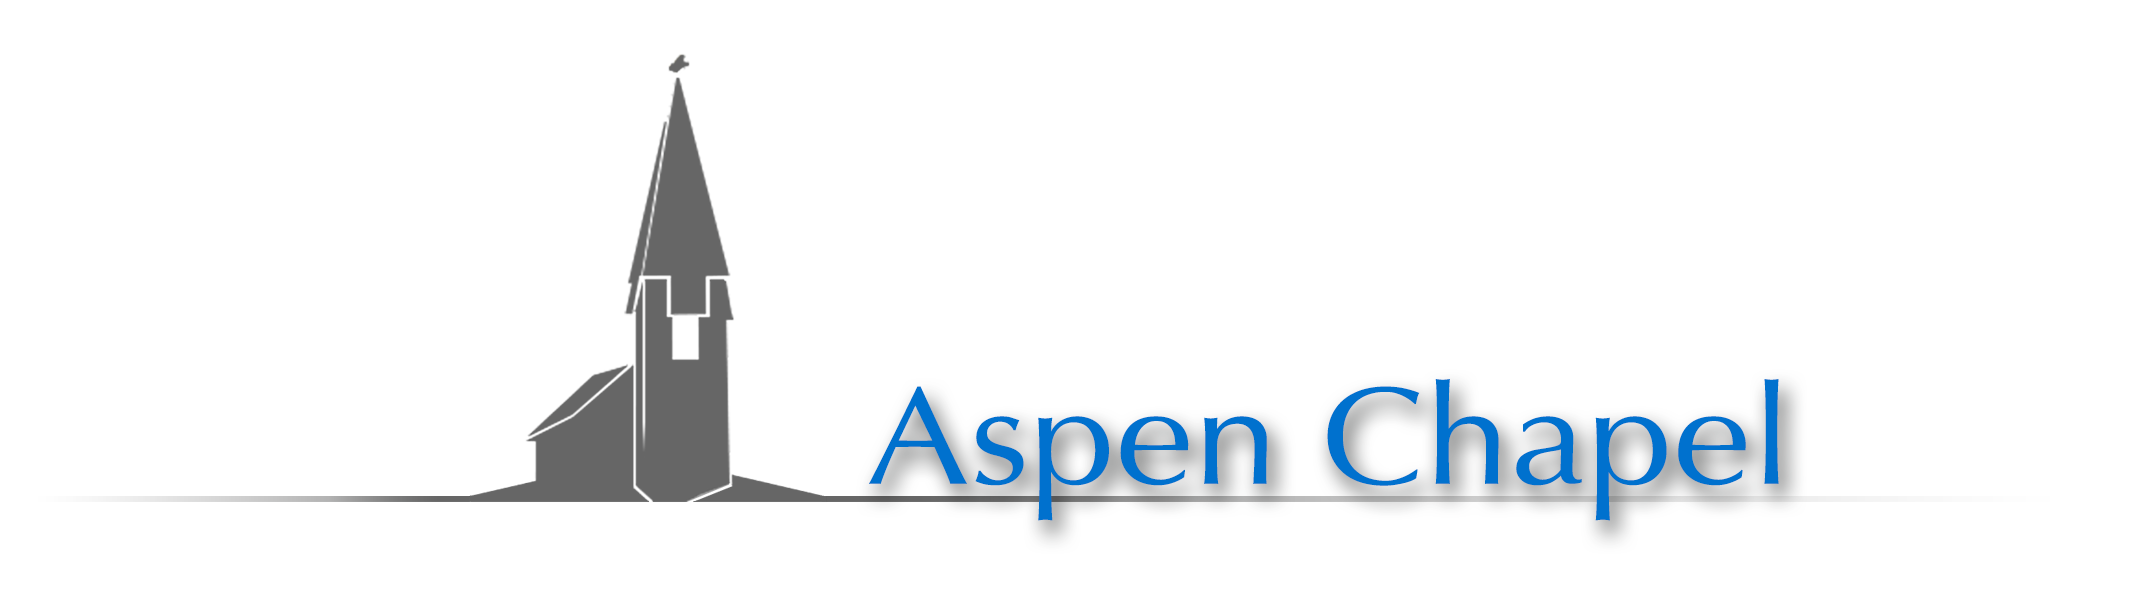 Aspen Chapel